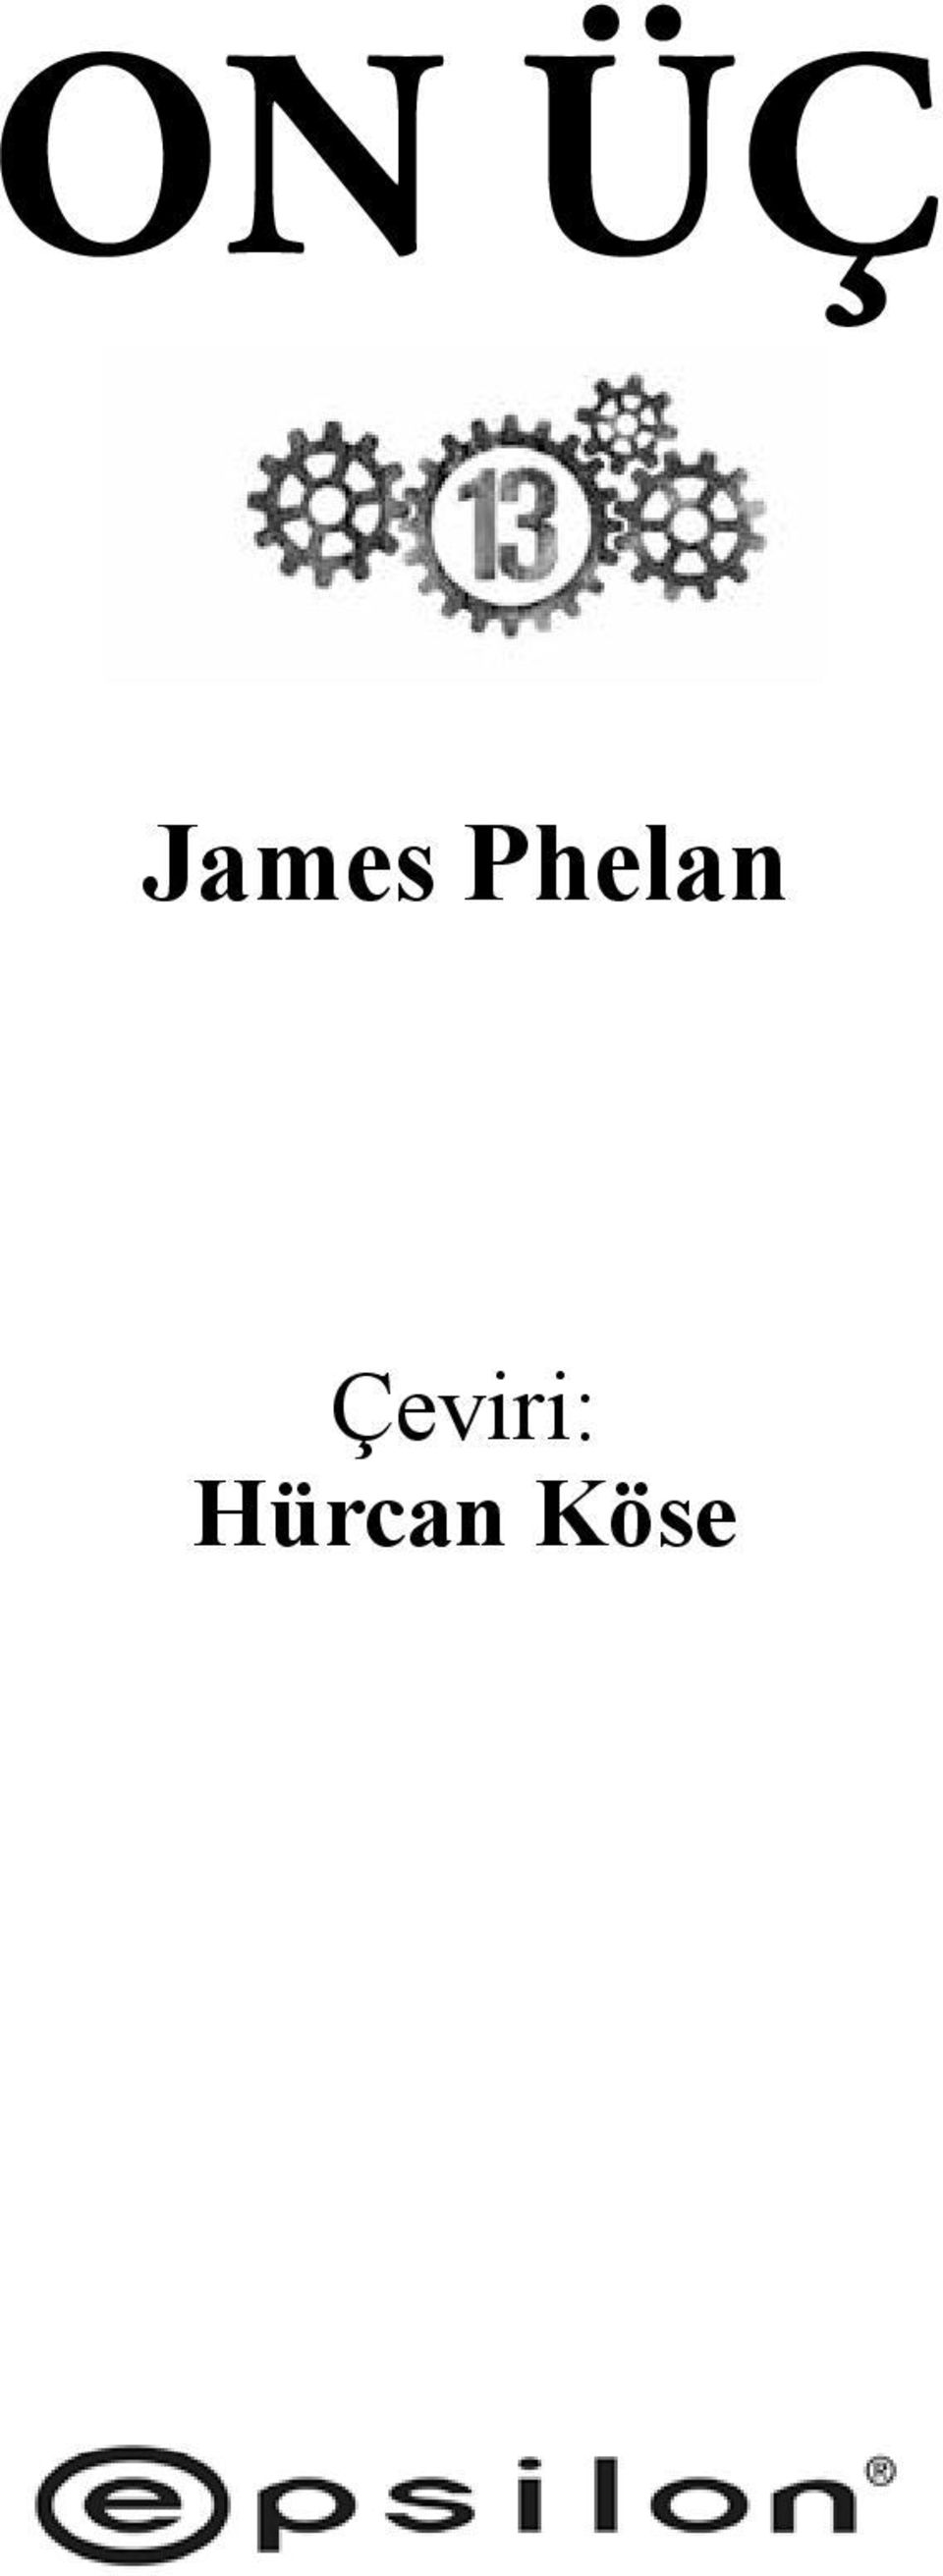 Phelan